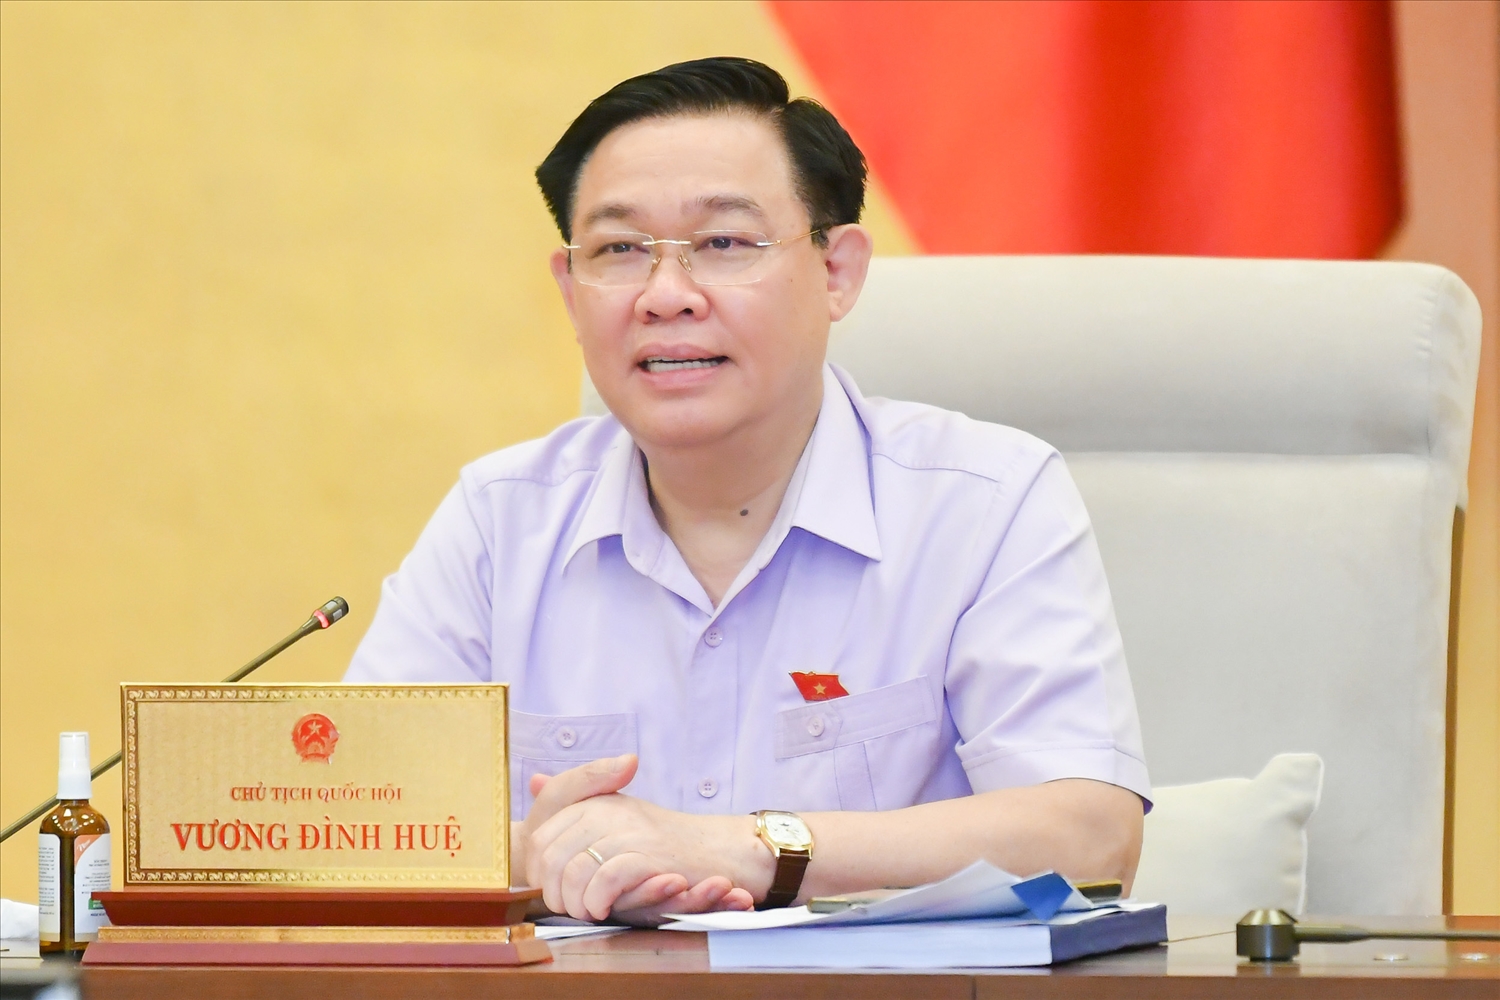 Chủ tịch Quốc hội Vương Đình Huệ cho ý kiến về dự thảo Nghị quyết ban hành Nội quy kỳ họp Quốc hội (sửa đổi)